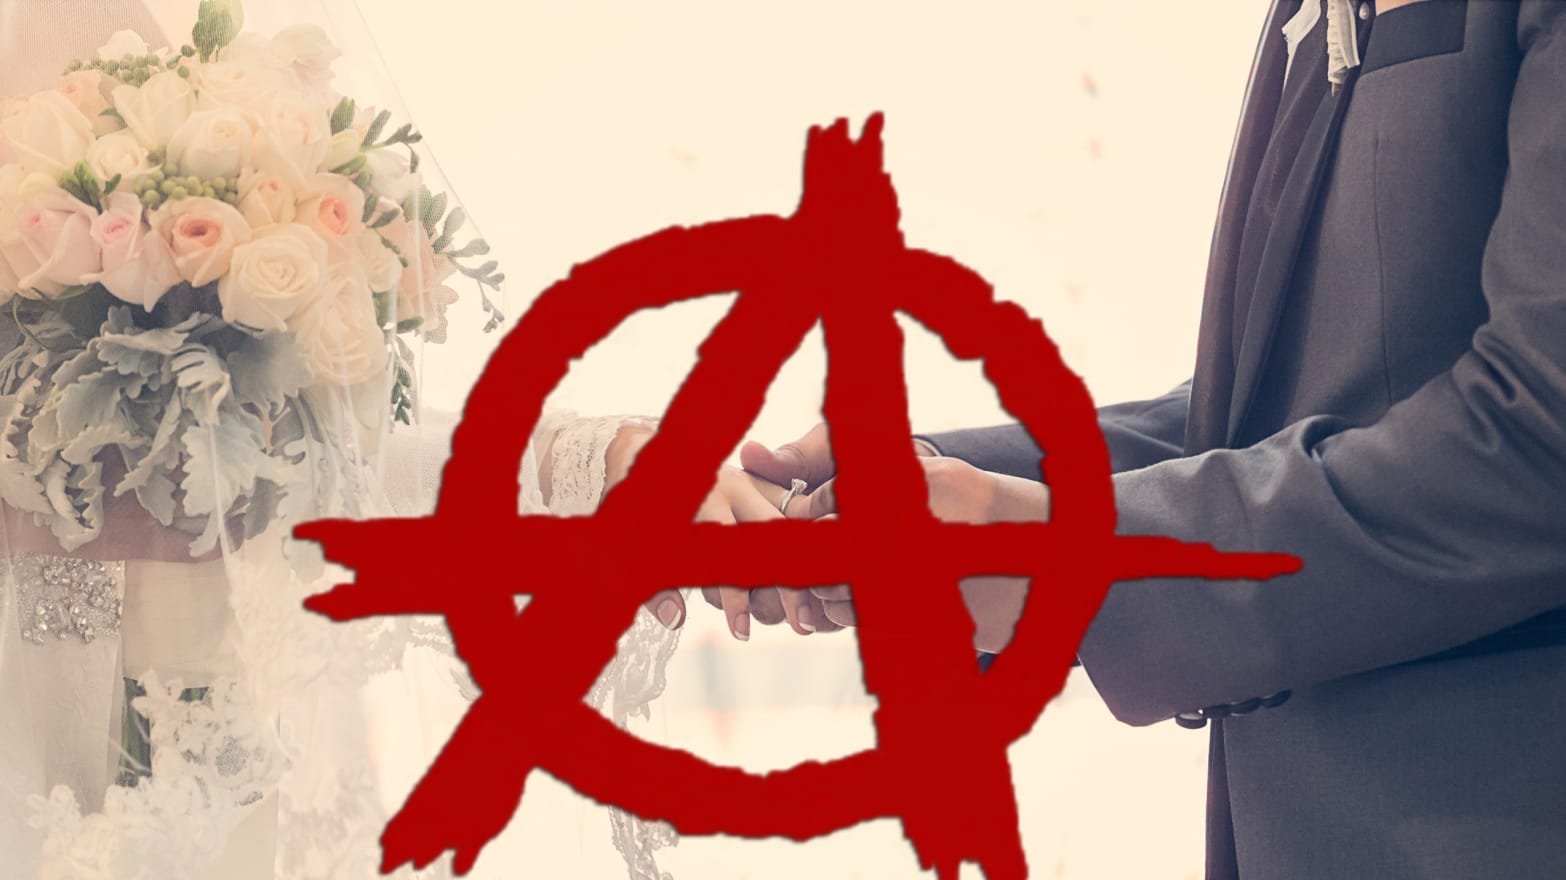 Antifa Weddings are Best Weddings